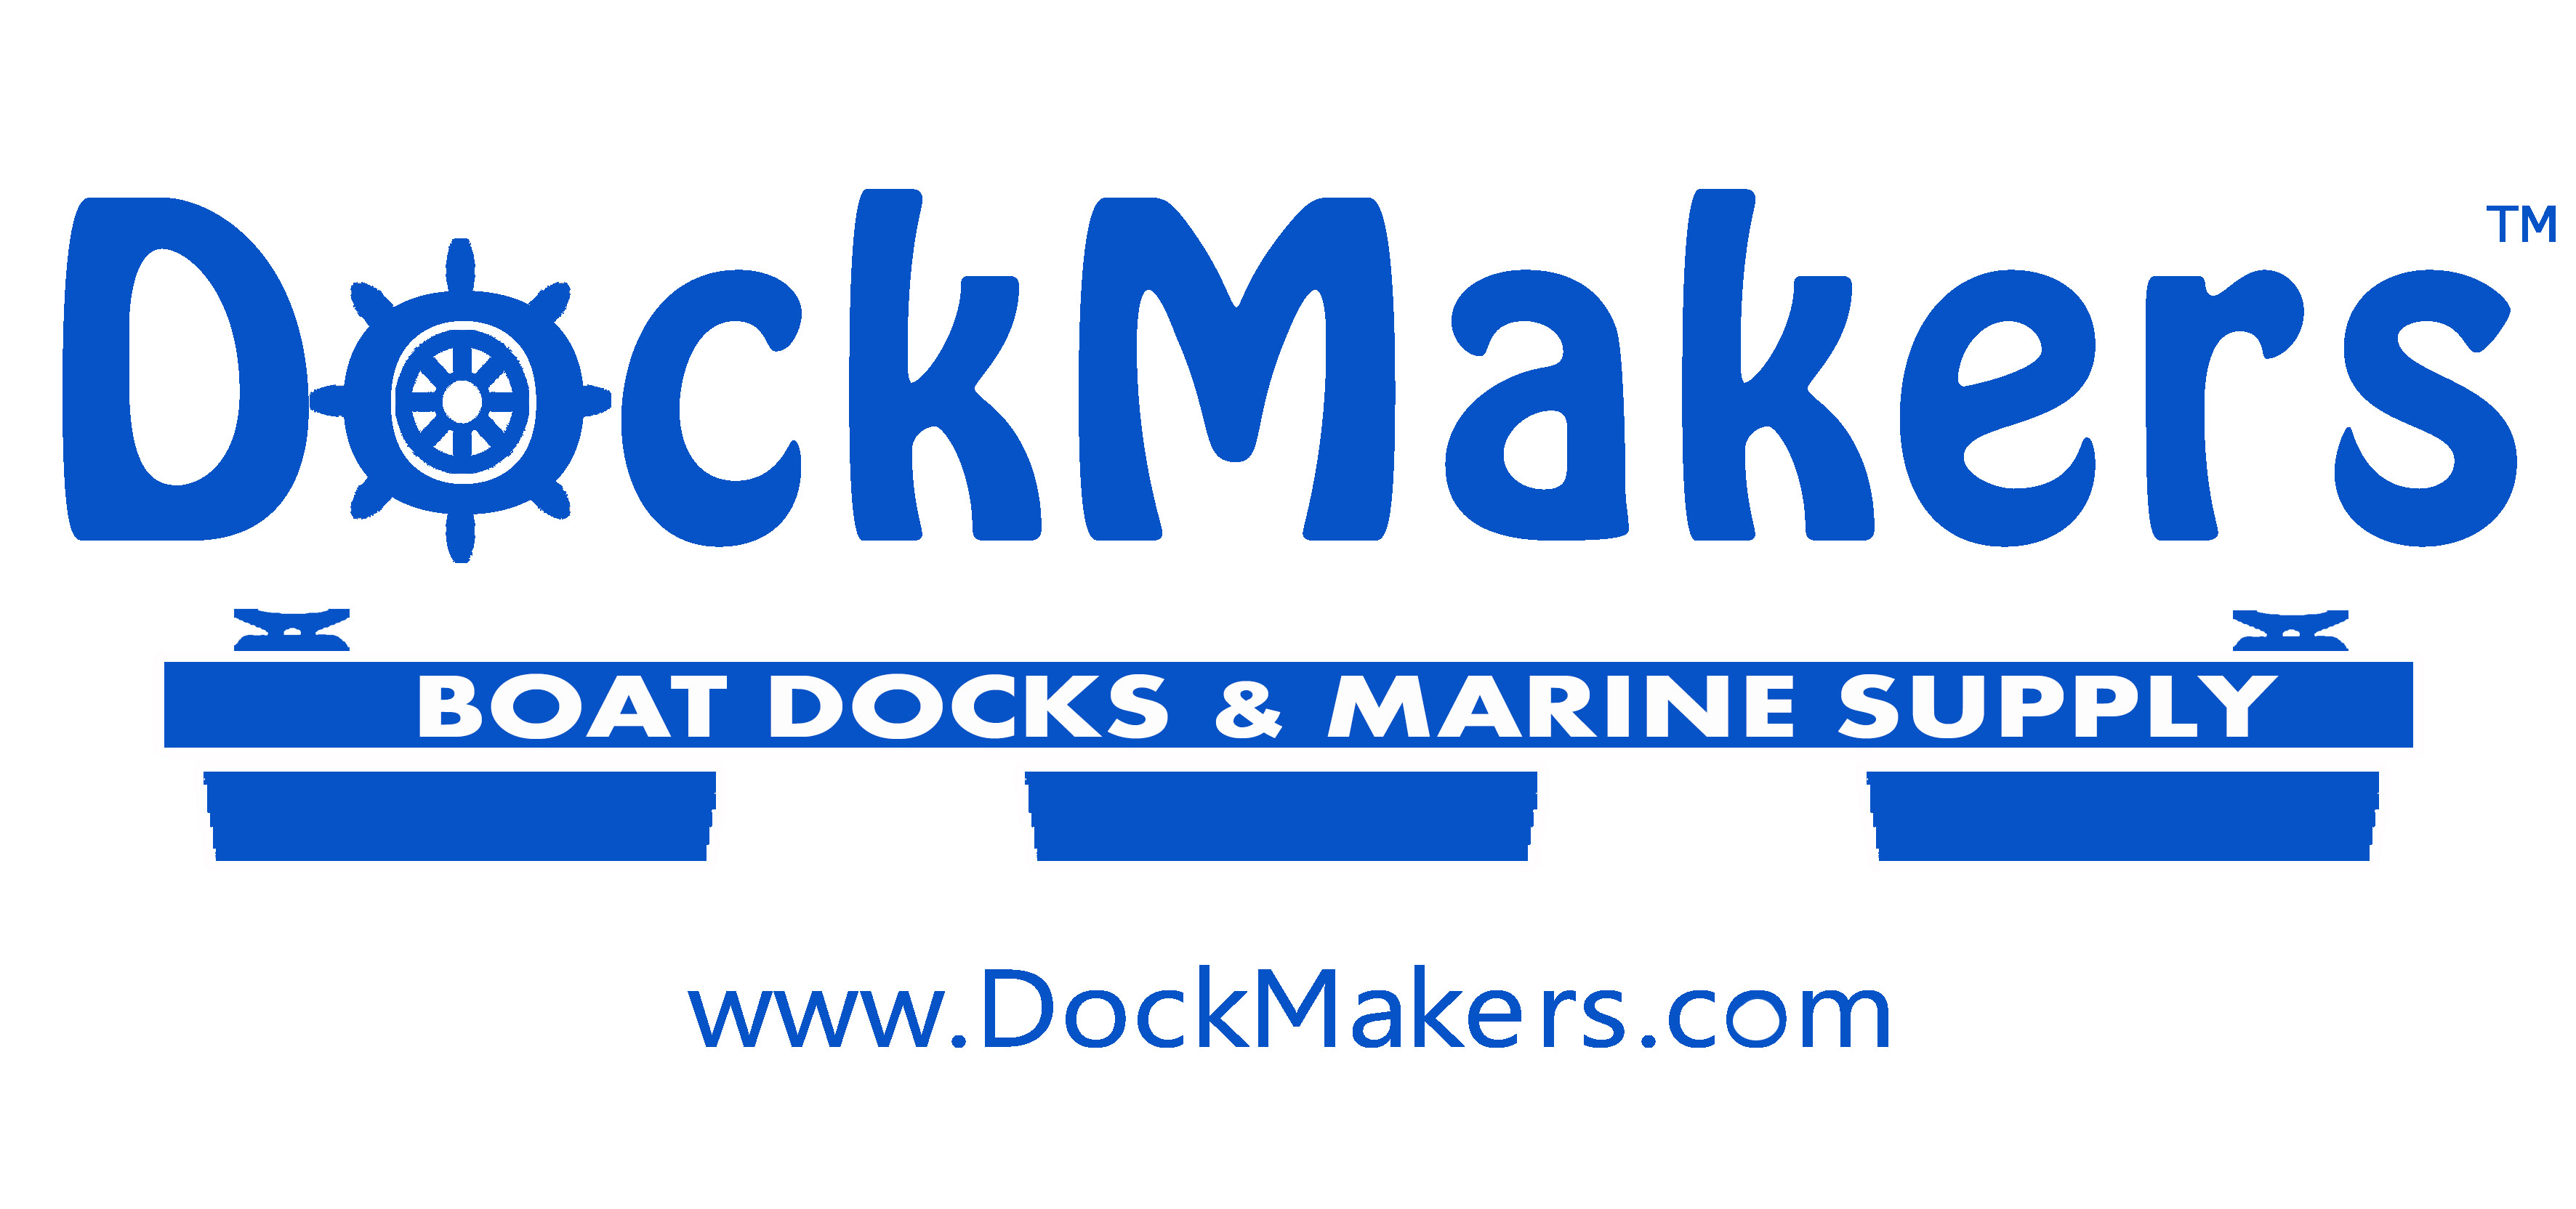 Marinas, Decks & Boat Docks